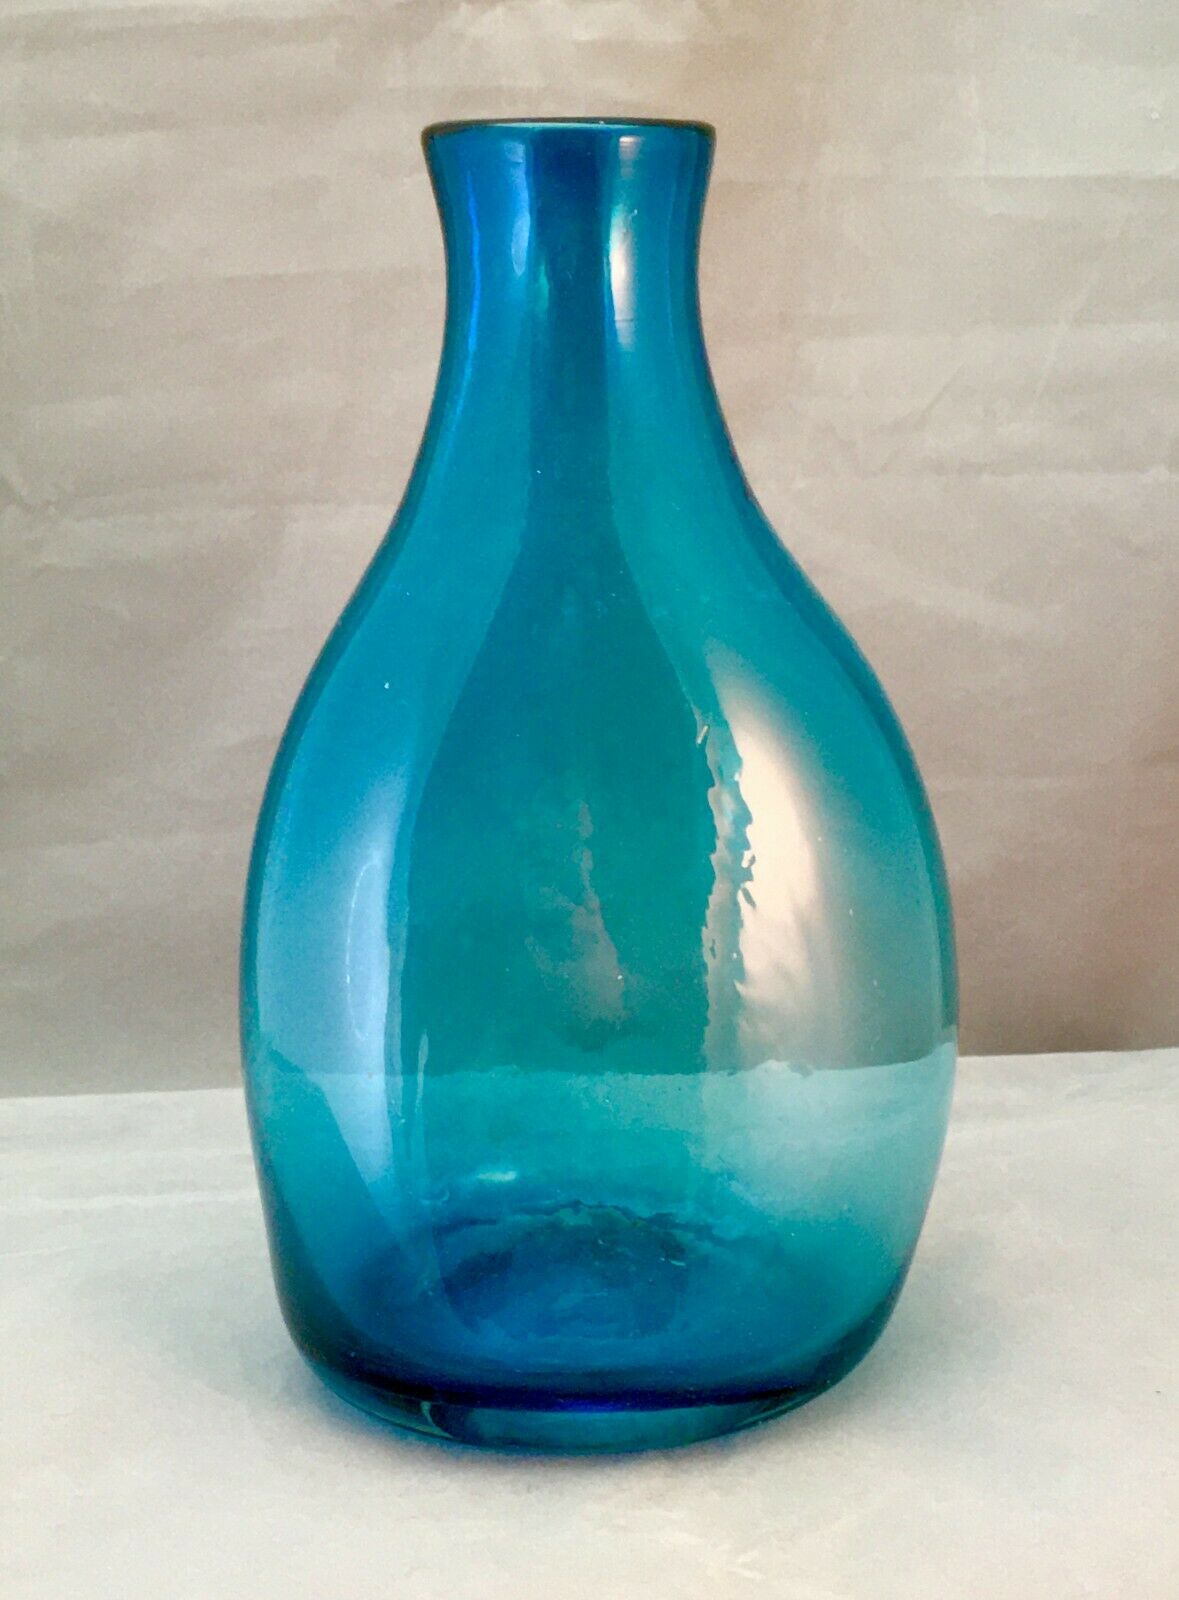 Antique/vintage Teal Blown Glass Bottle Flask Vase Pontil